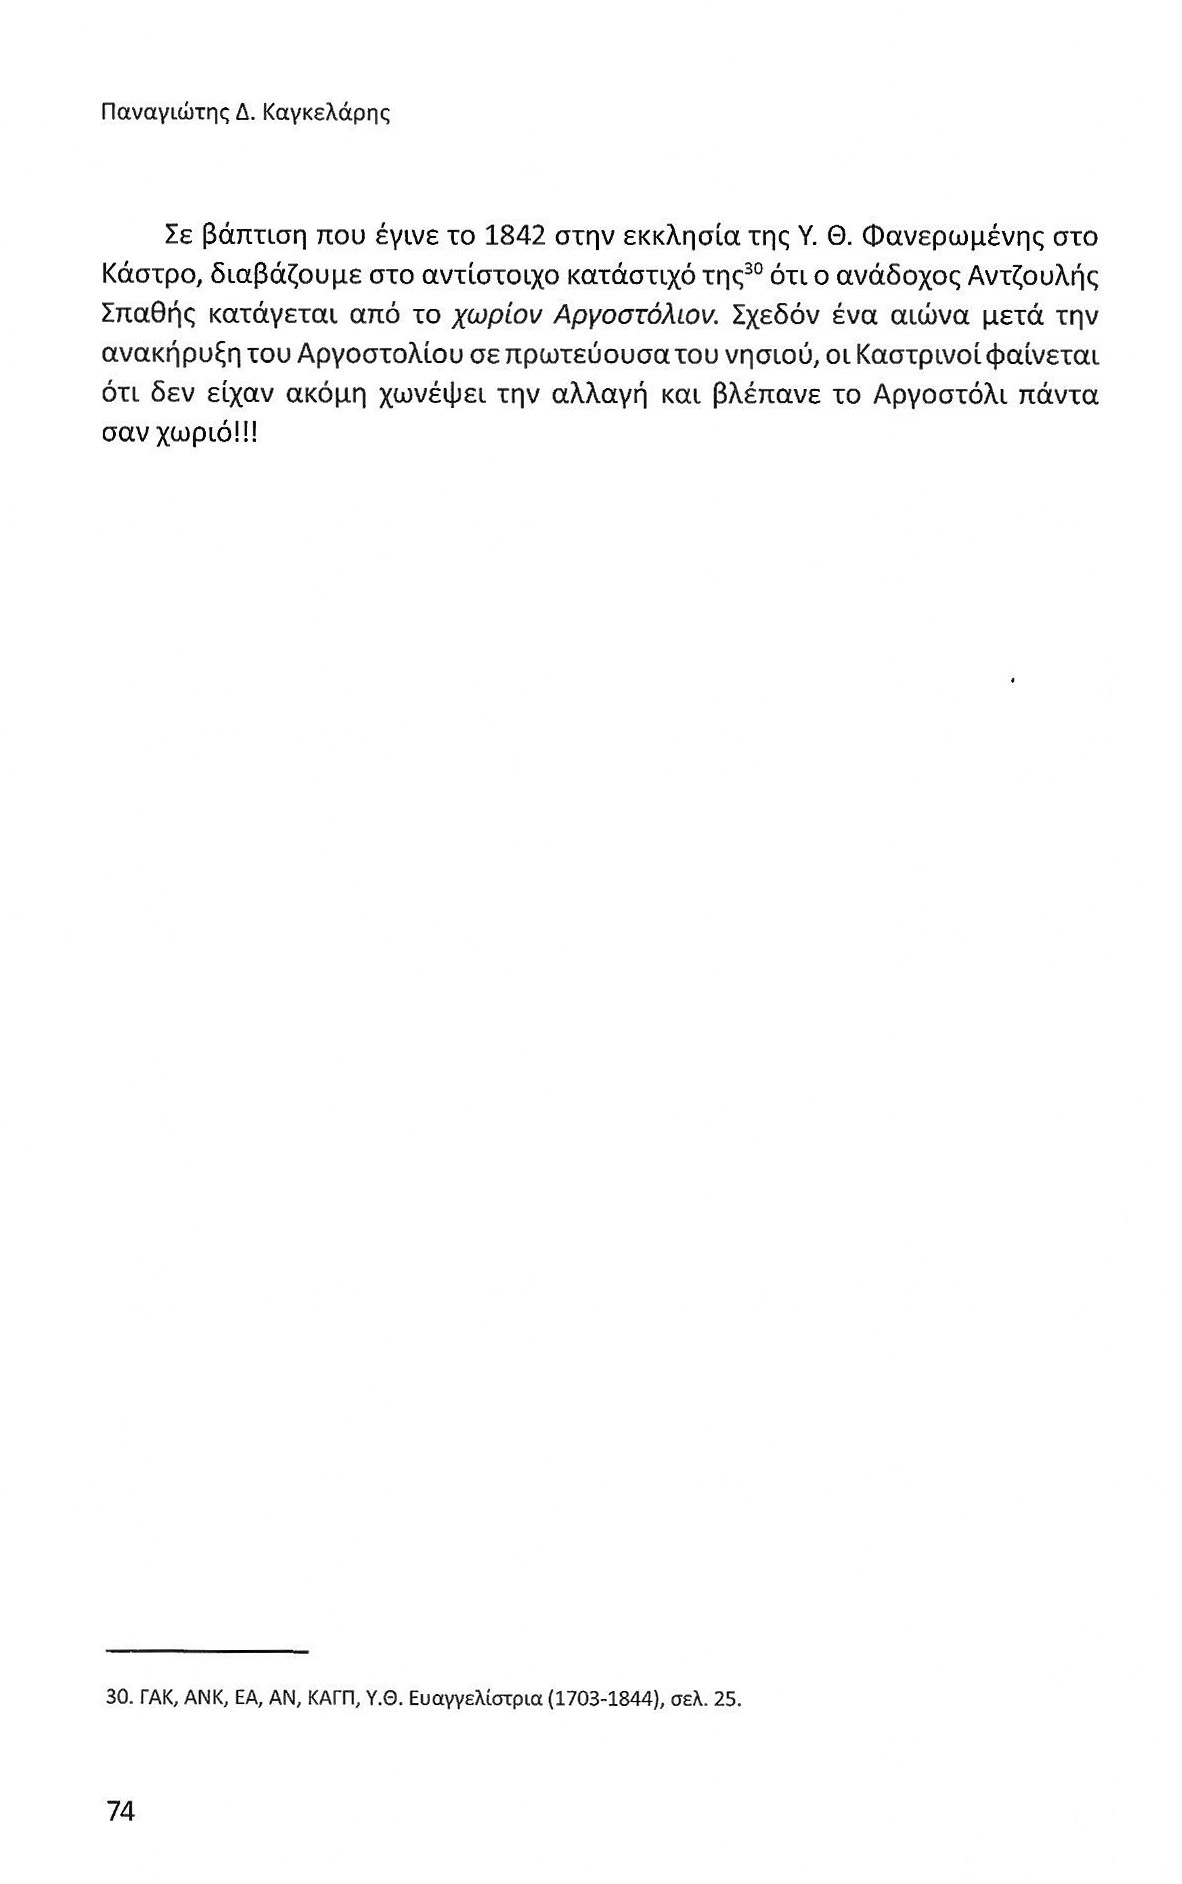 Πρώτα 50 χρόνια Αργοστολίου ως πρωτεύουσας Κεφαλονιάς, Ιονικά Ανάλεκτα, τ. 7, σελ. 74